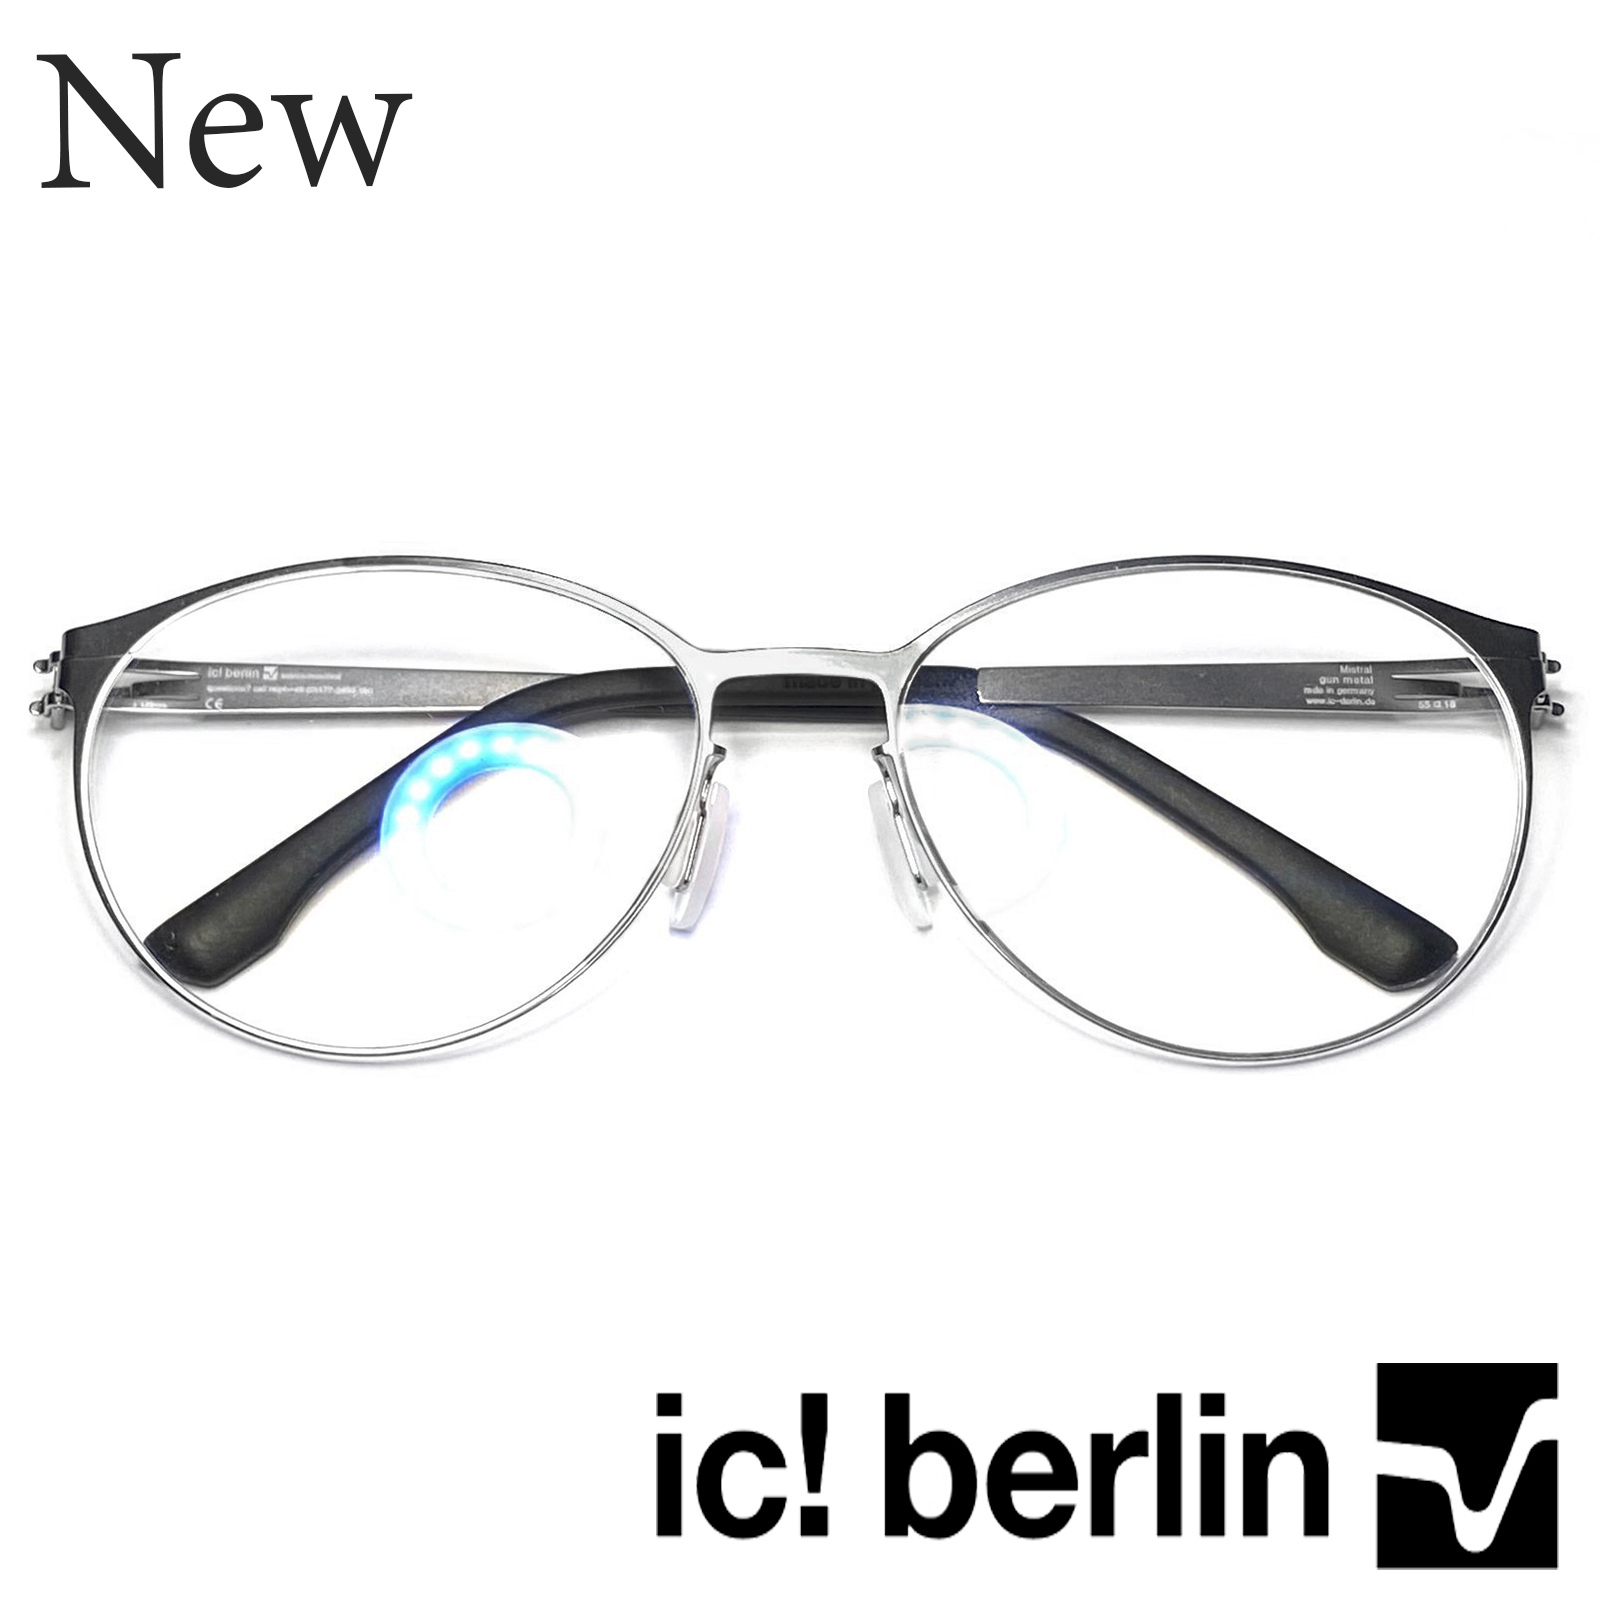 กรอบแว่นตา สำหรับตัดเลนส์ แว่นตาชาย หญิง Fashion รุ่น IC-Mistral 44 สีเงิน กรอบเต็ม ทรงรี ขาไม่ใช้น็อต ถอดได้ วัสดุ Stainless Steel น้ำหนักเบา